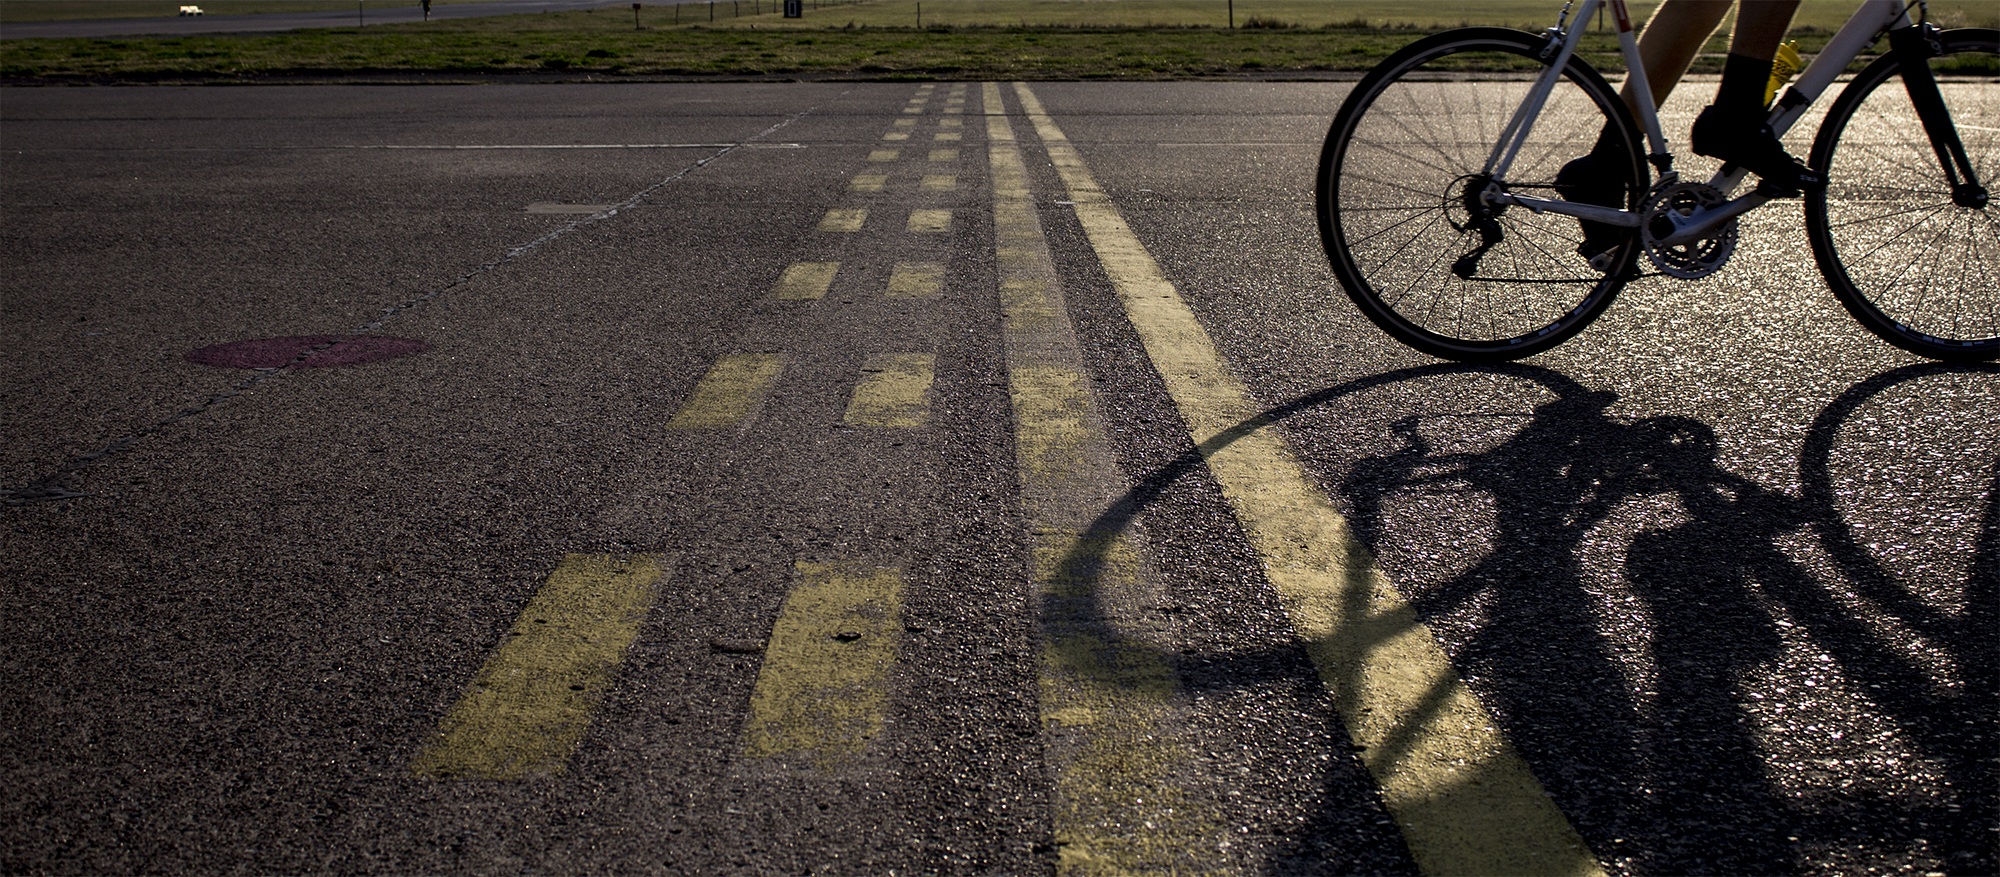 Сам дорог велосипеды. Велосипед на дороге. Велосипед на асфальте. Велосипед валяется на дороге. Велосипед лежит на дороге.